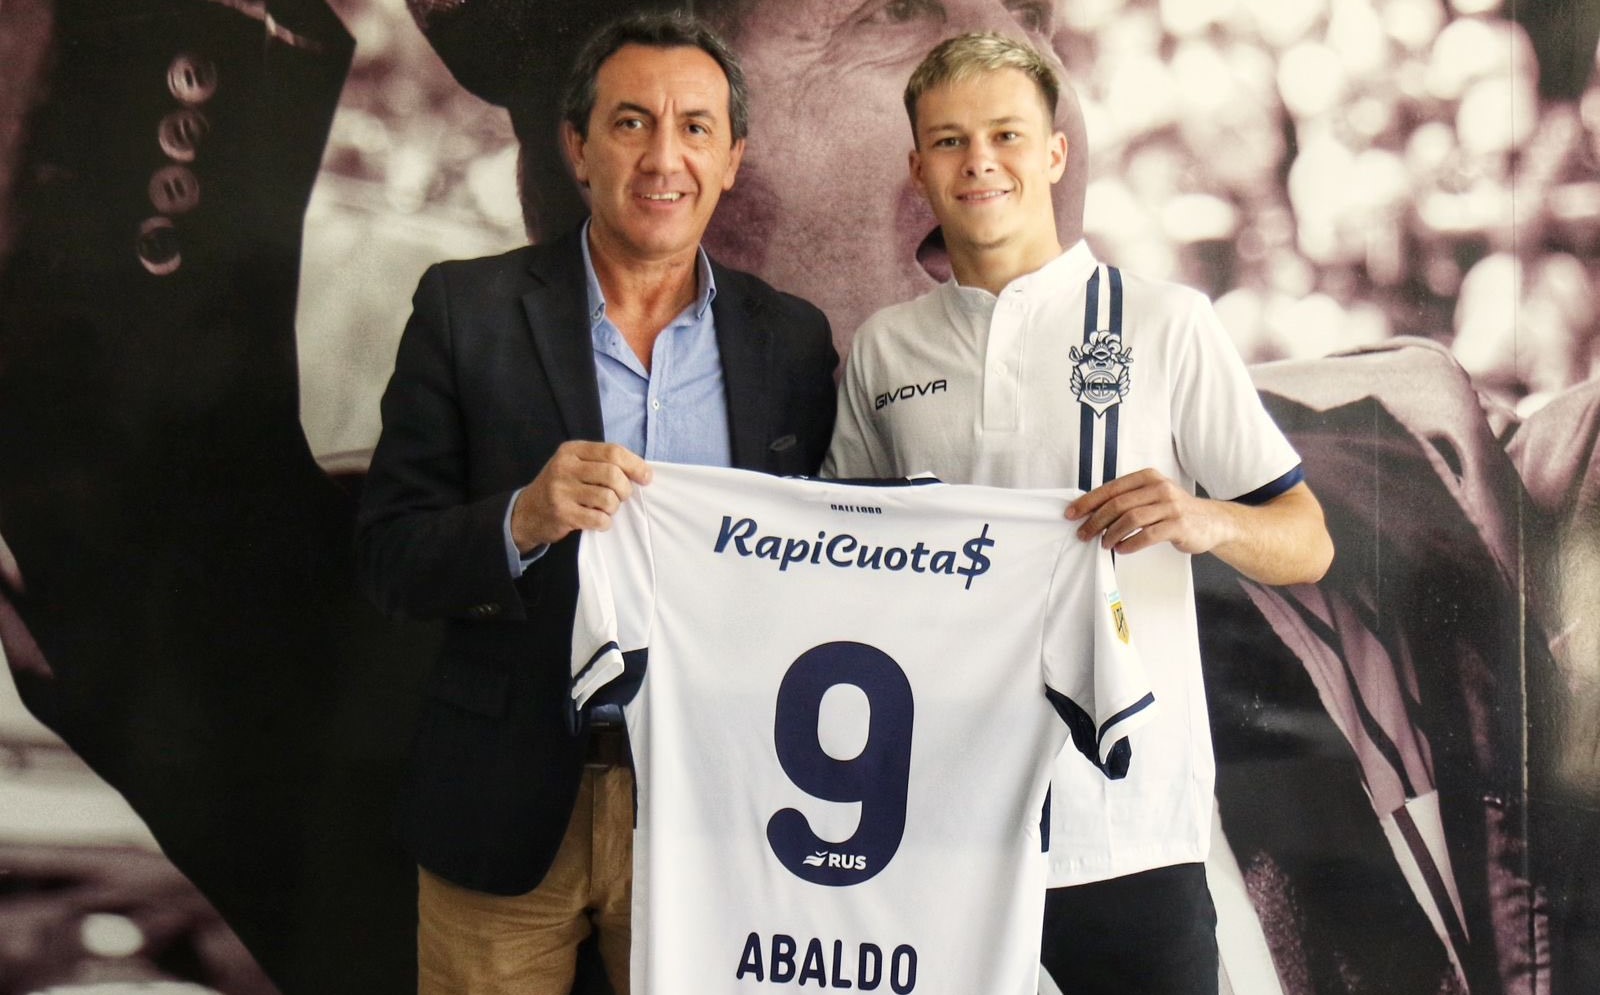 Matías Abaldo was officially introduced as the new football player of Gimnasia de La Plata.